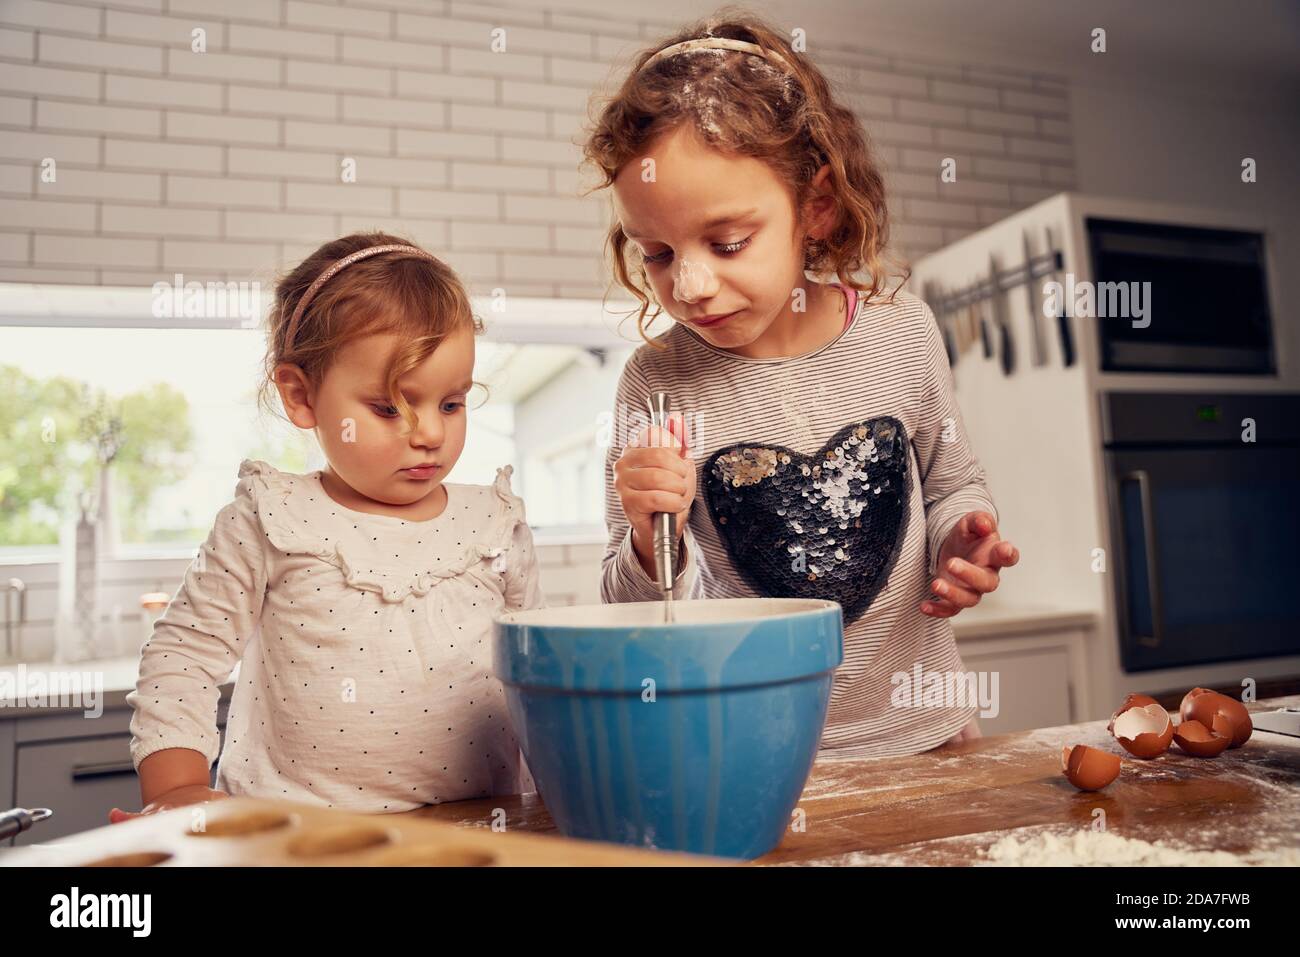 Kleine Mädchen mit Handmixer in Schüssel während der Zubereitung von Teig Mit Eiern auf Küchenablage zu Hause Stockfoto